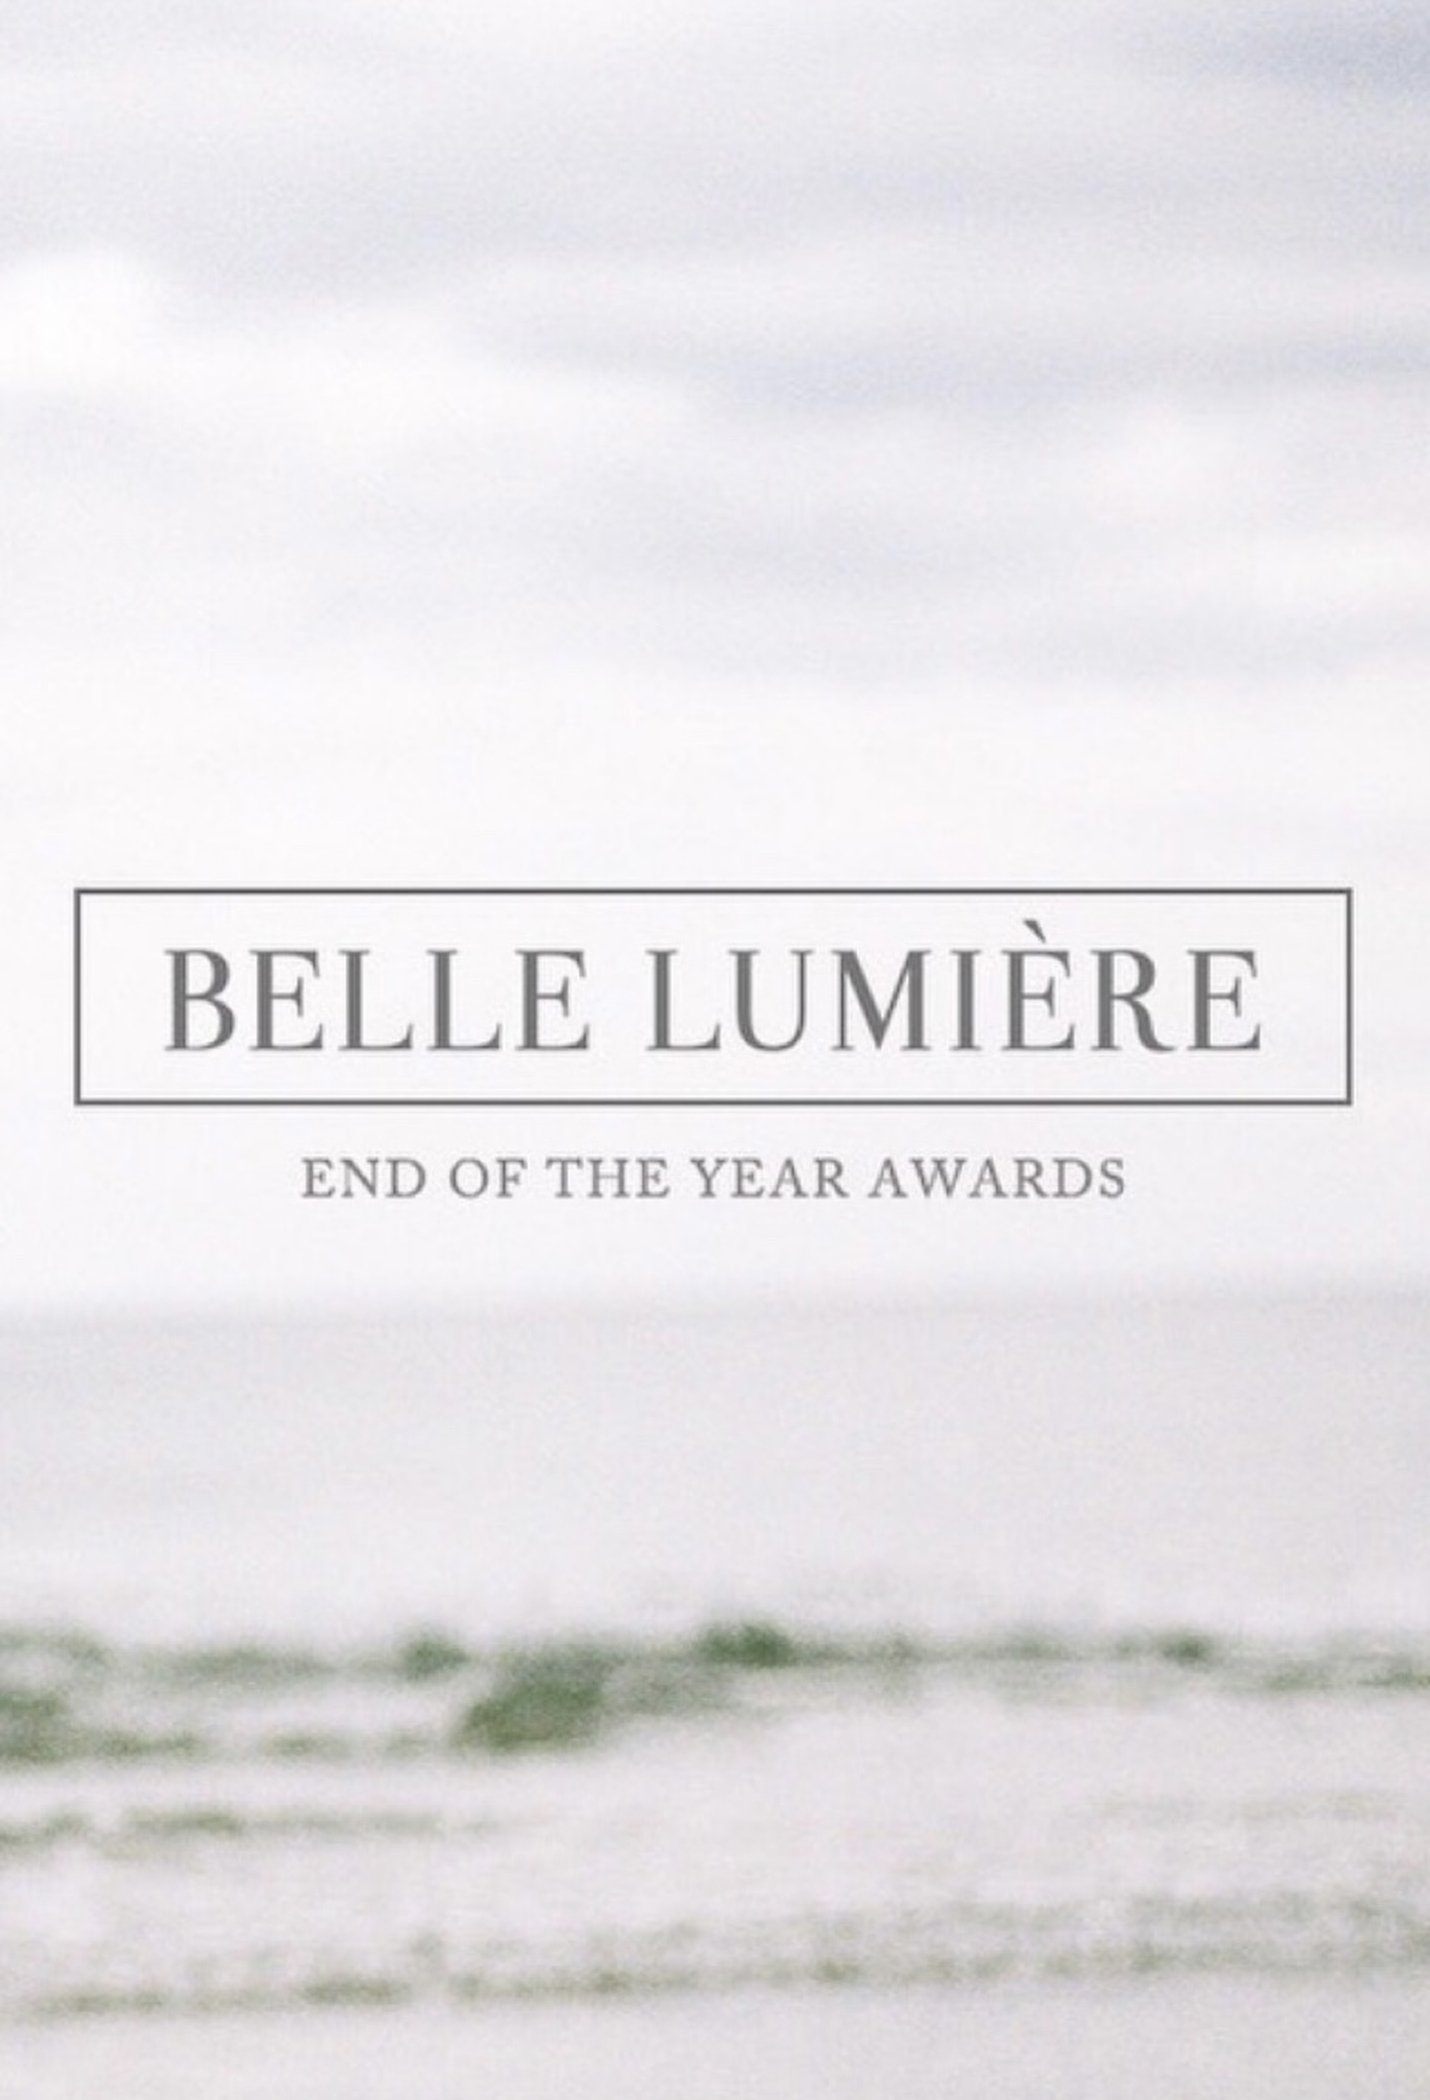 BelleLumiere_EOTYA_21_Awards.JPG